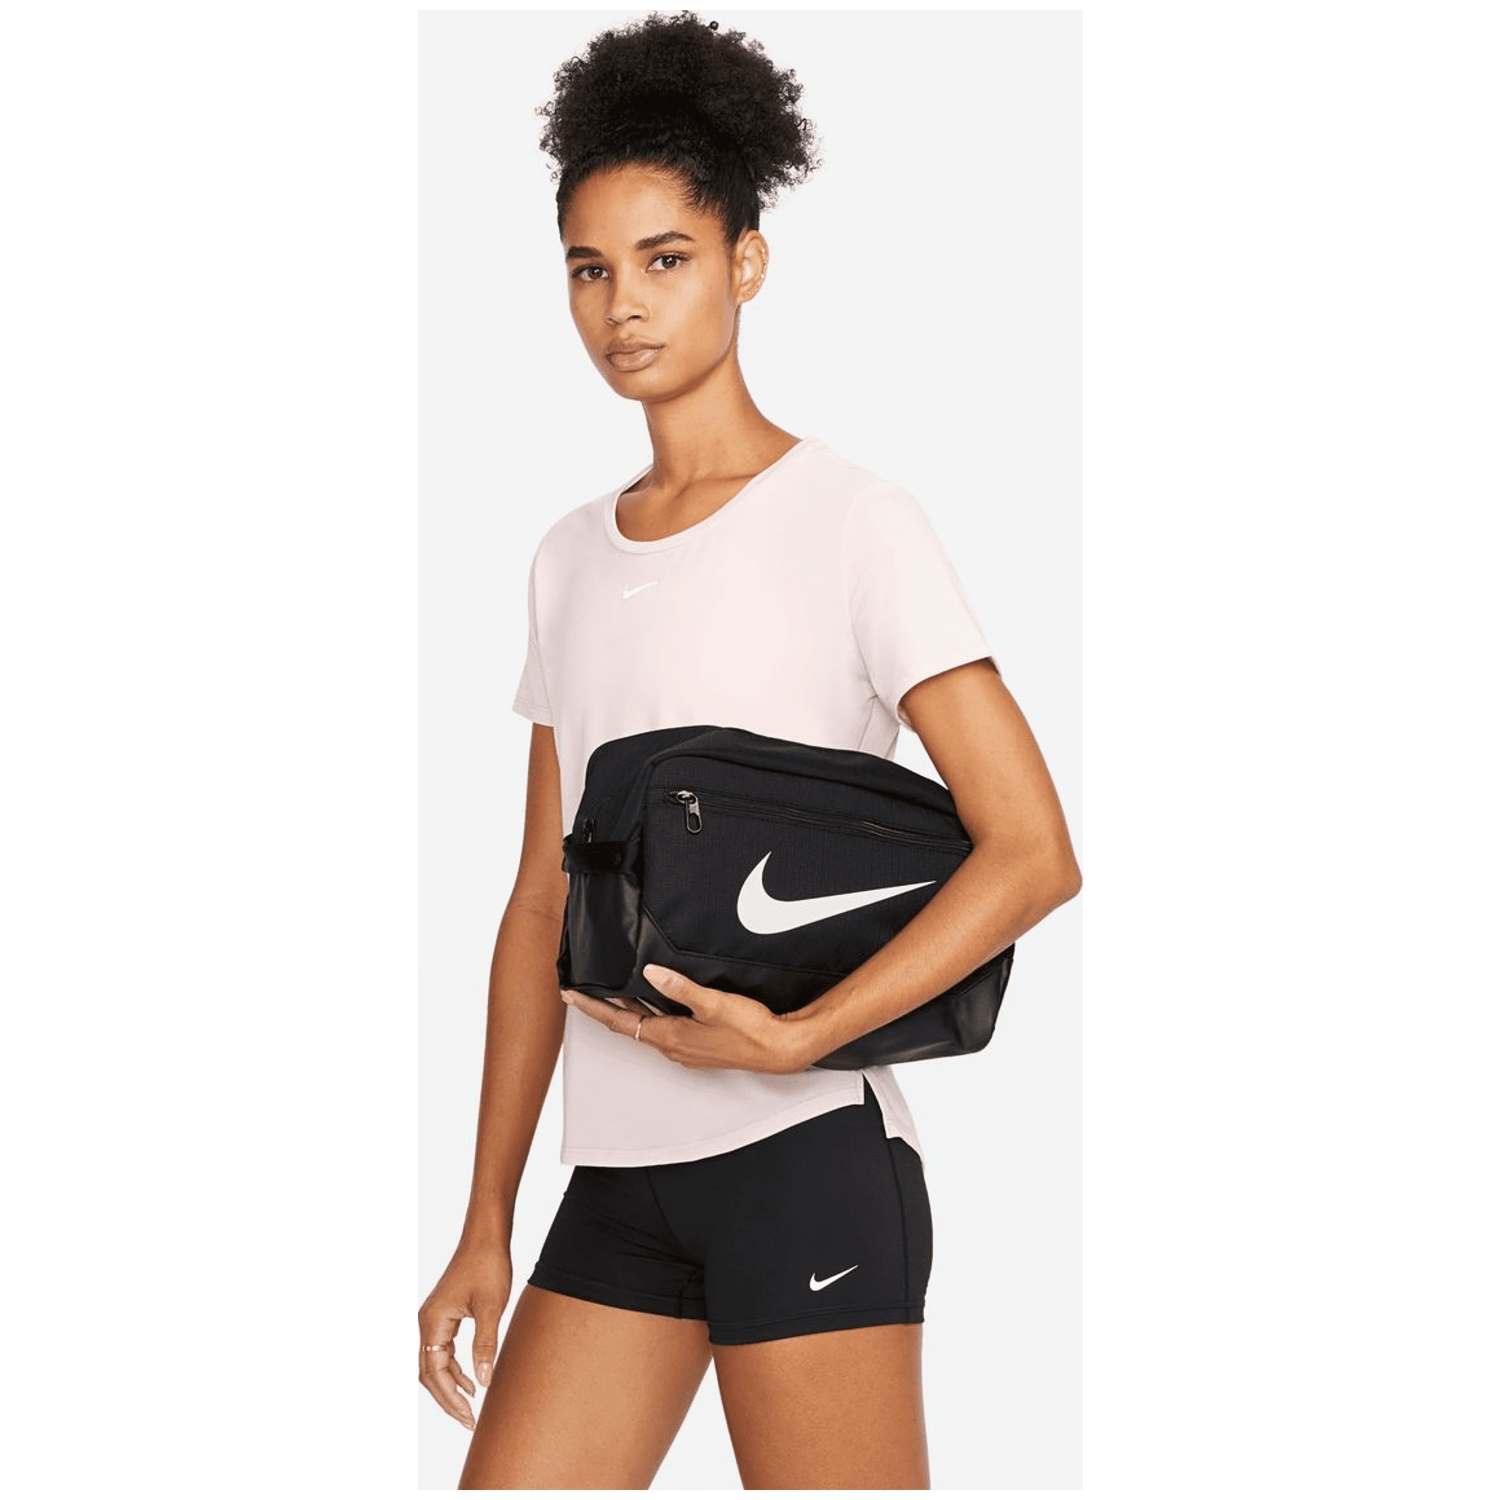 Nike Brasilia 9.5 Training Herren Sporttasche